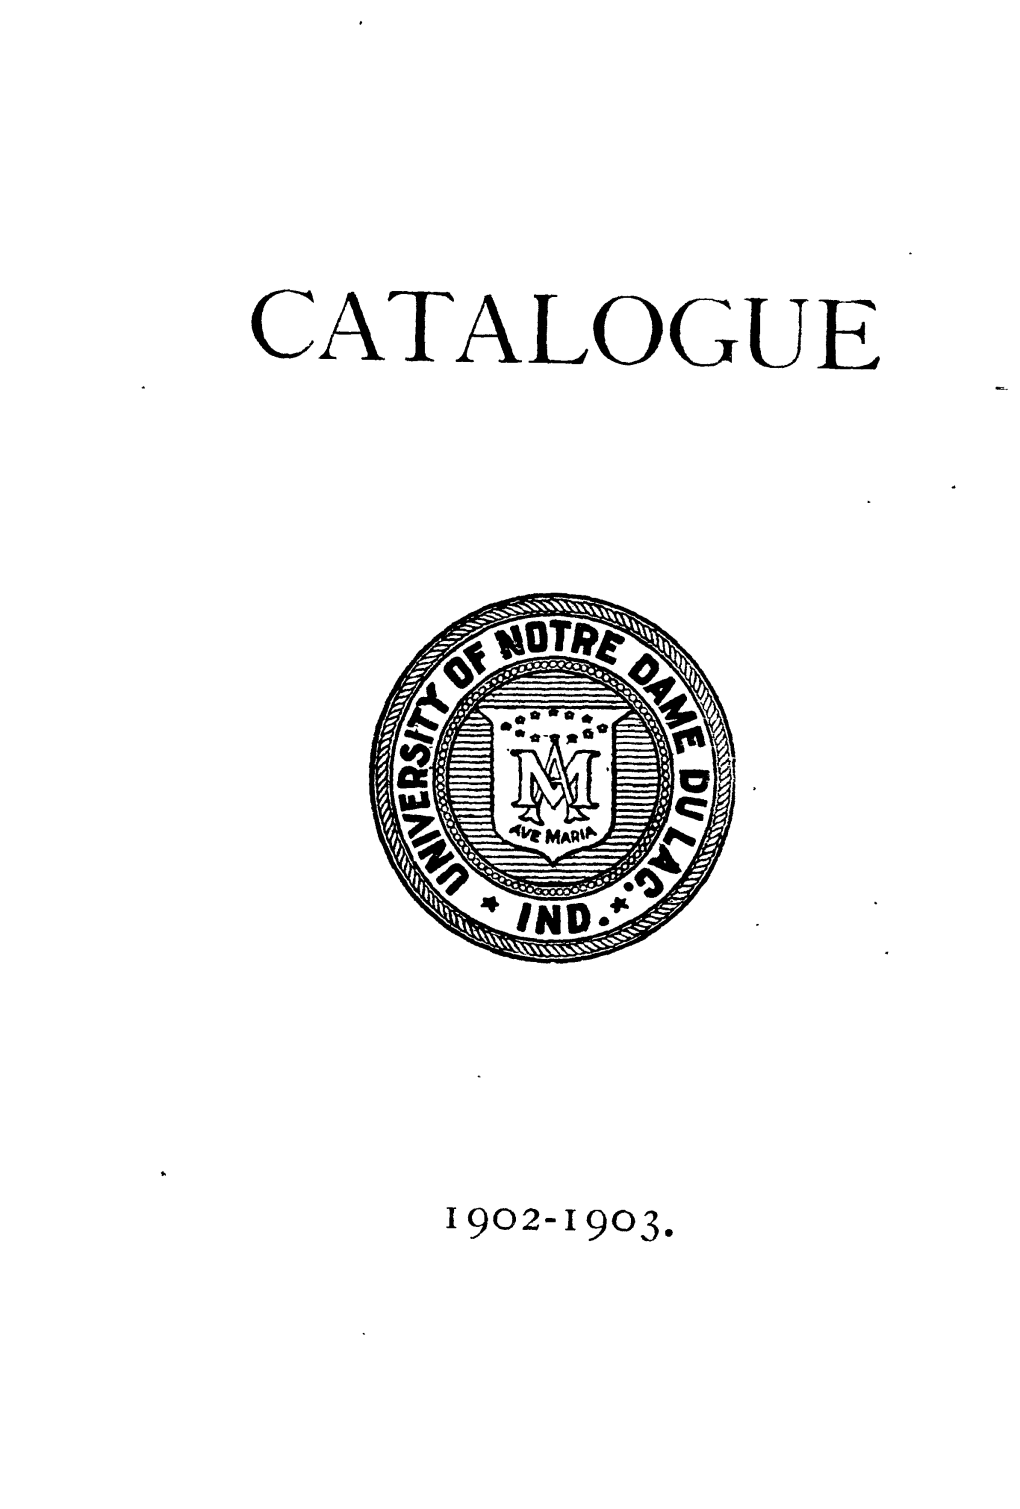 See 1902/1903 Catalogue